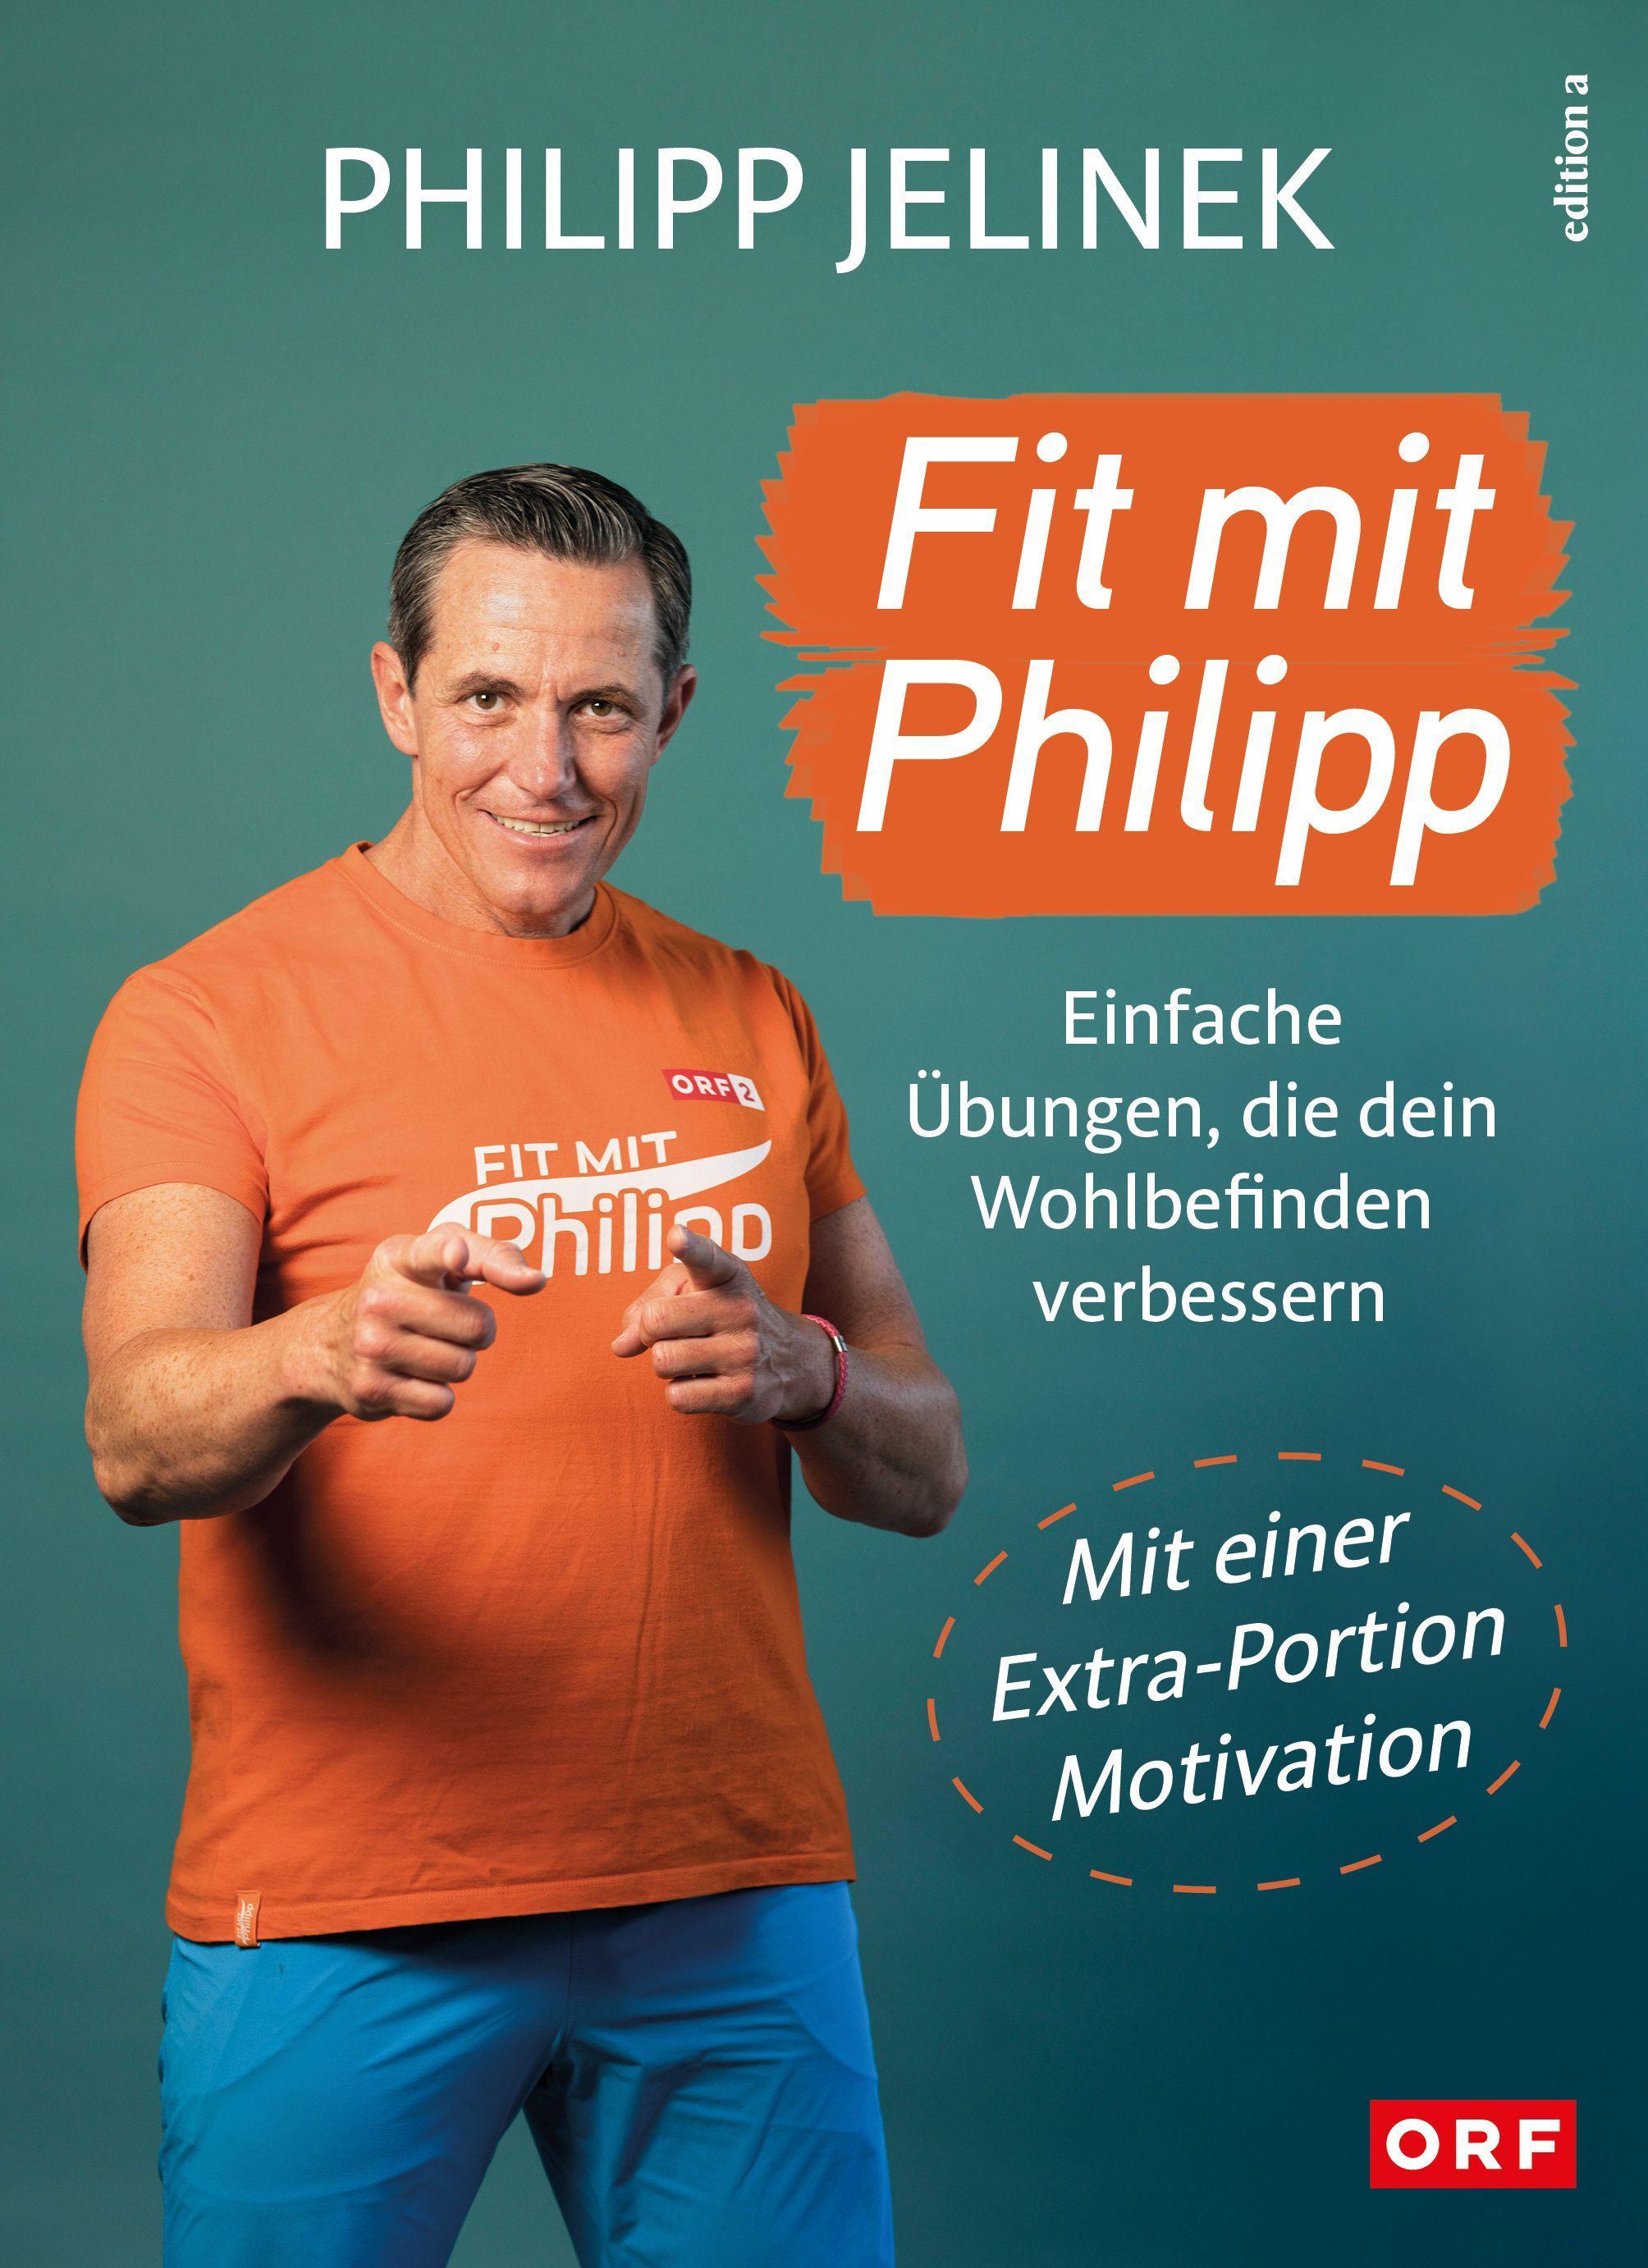 Fit mit Philipp Einfache Übungen, die dein Wohlbefinden verbessern